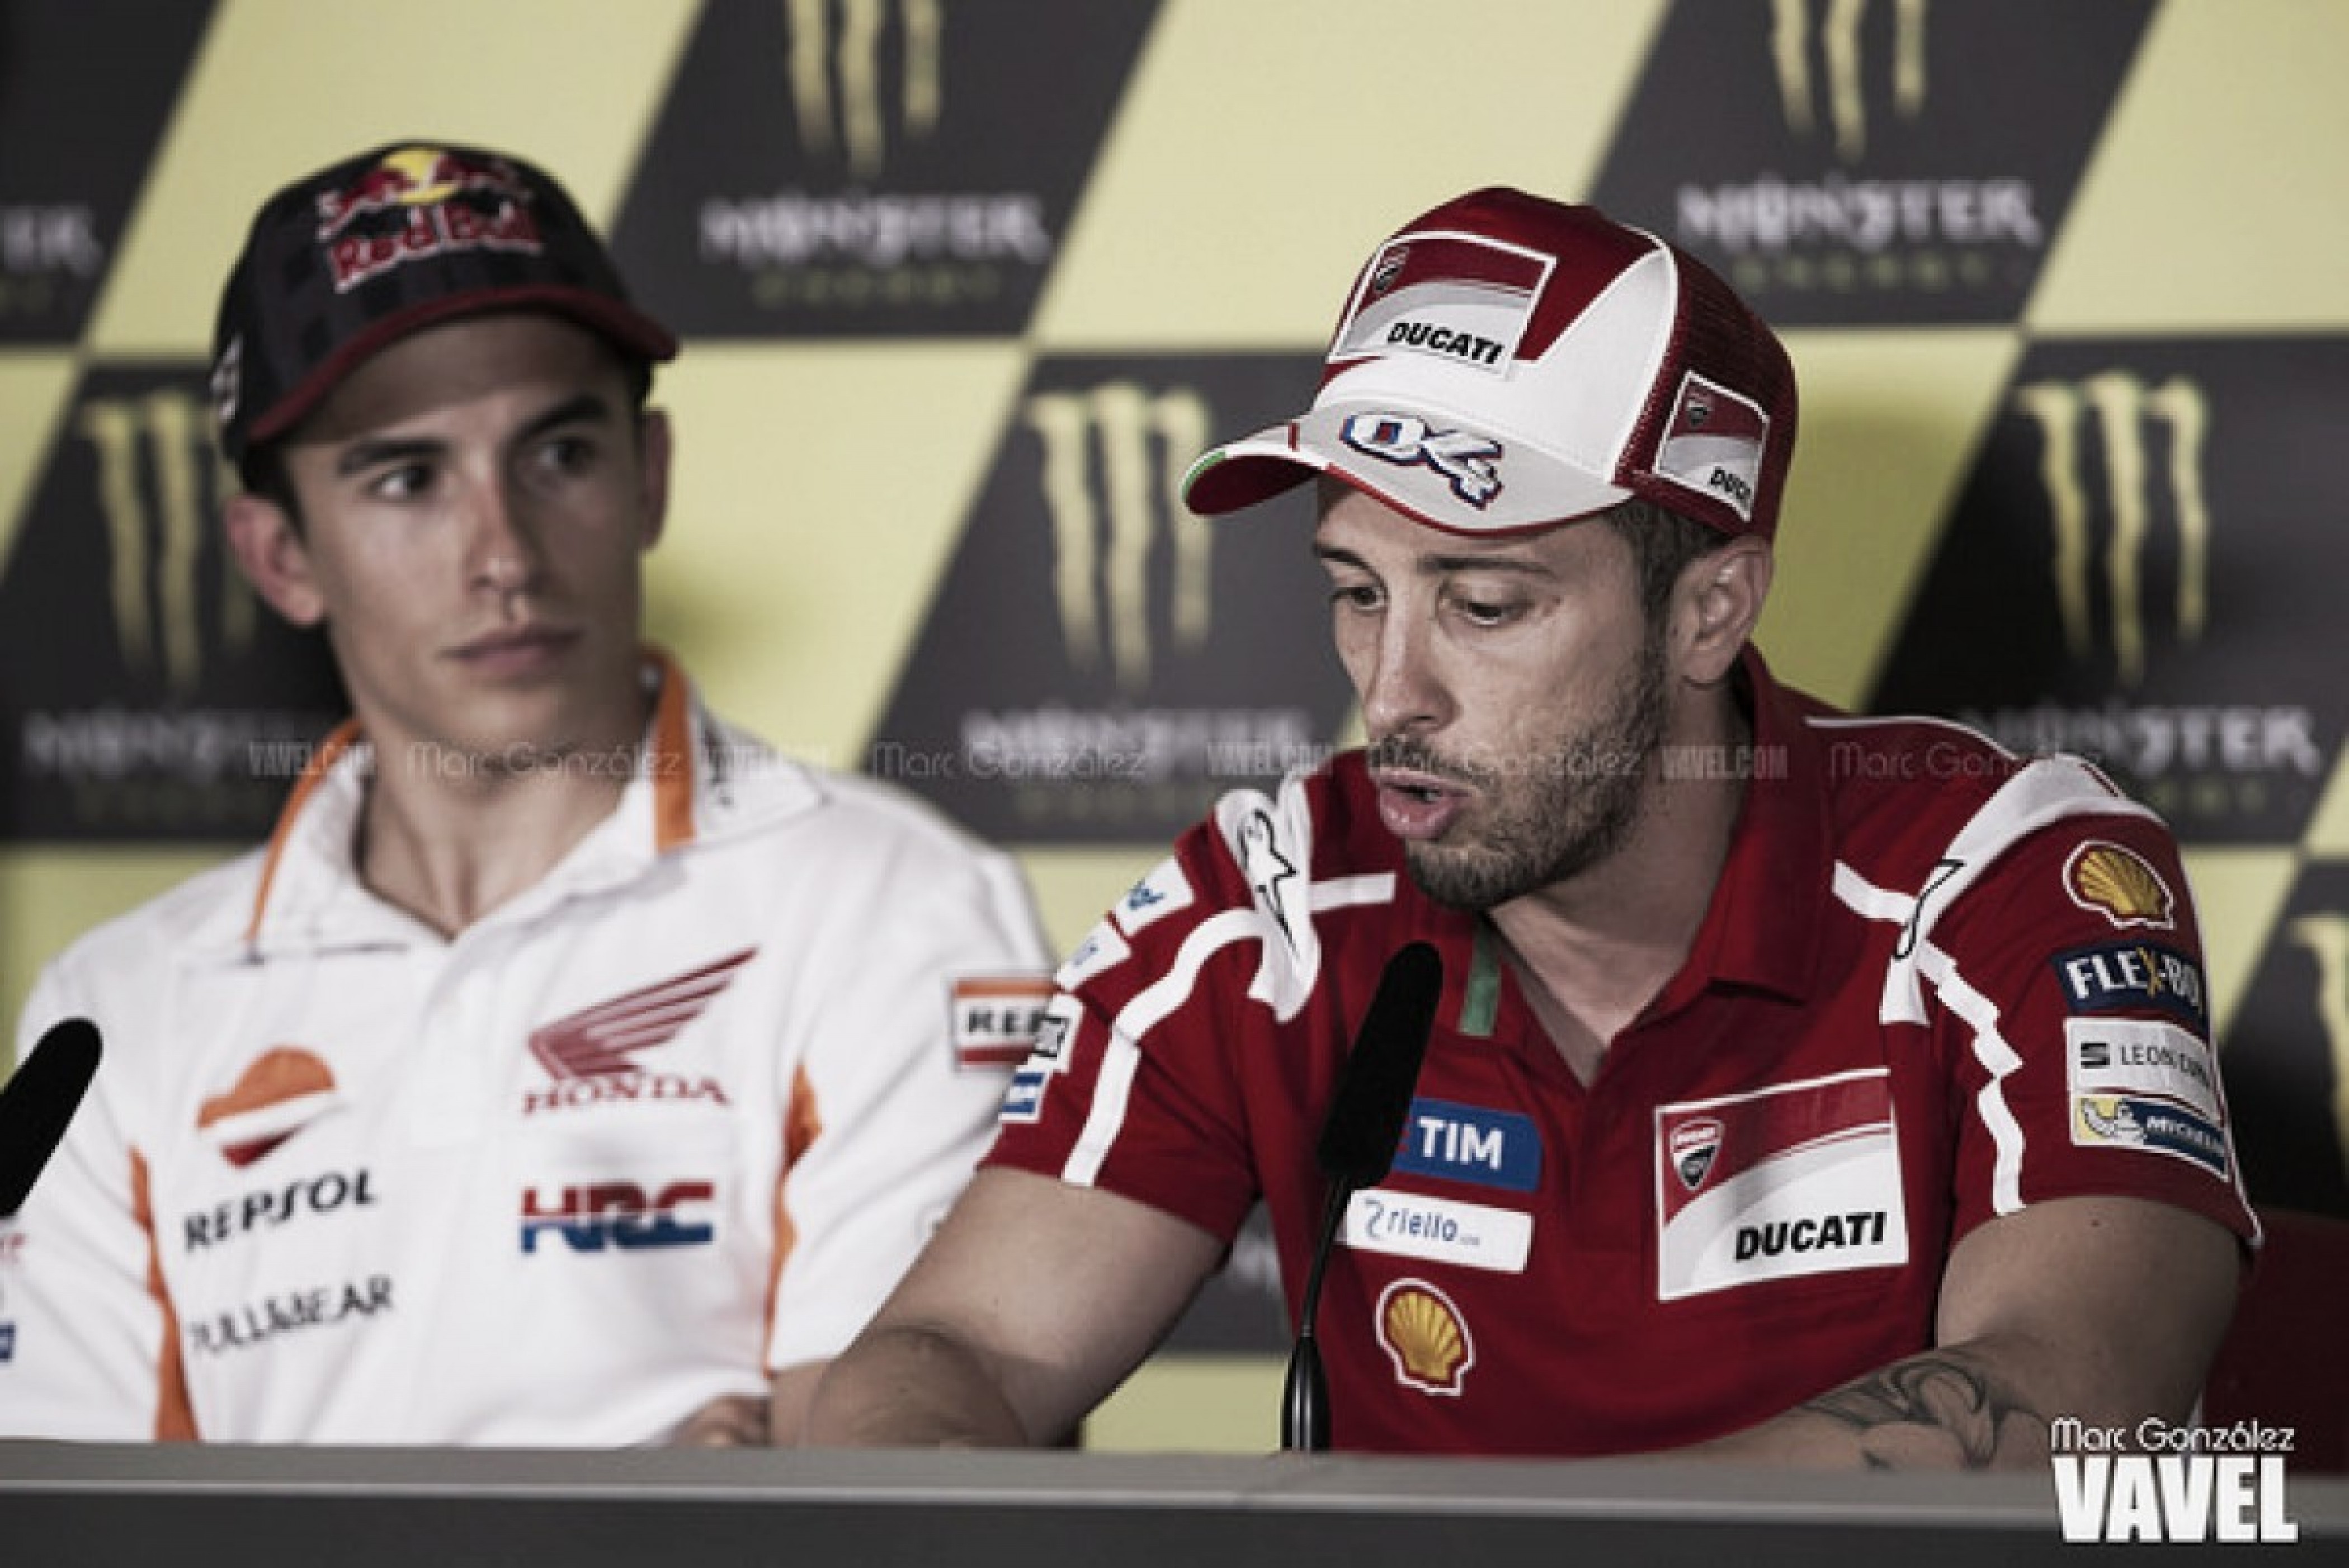 MotoGP - Gran Premio di Aragon: poker Ducati nelle libere 1